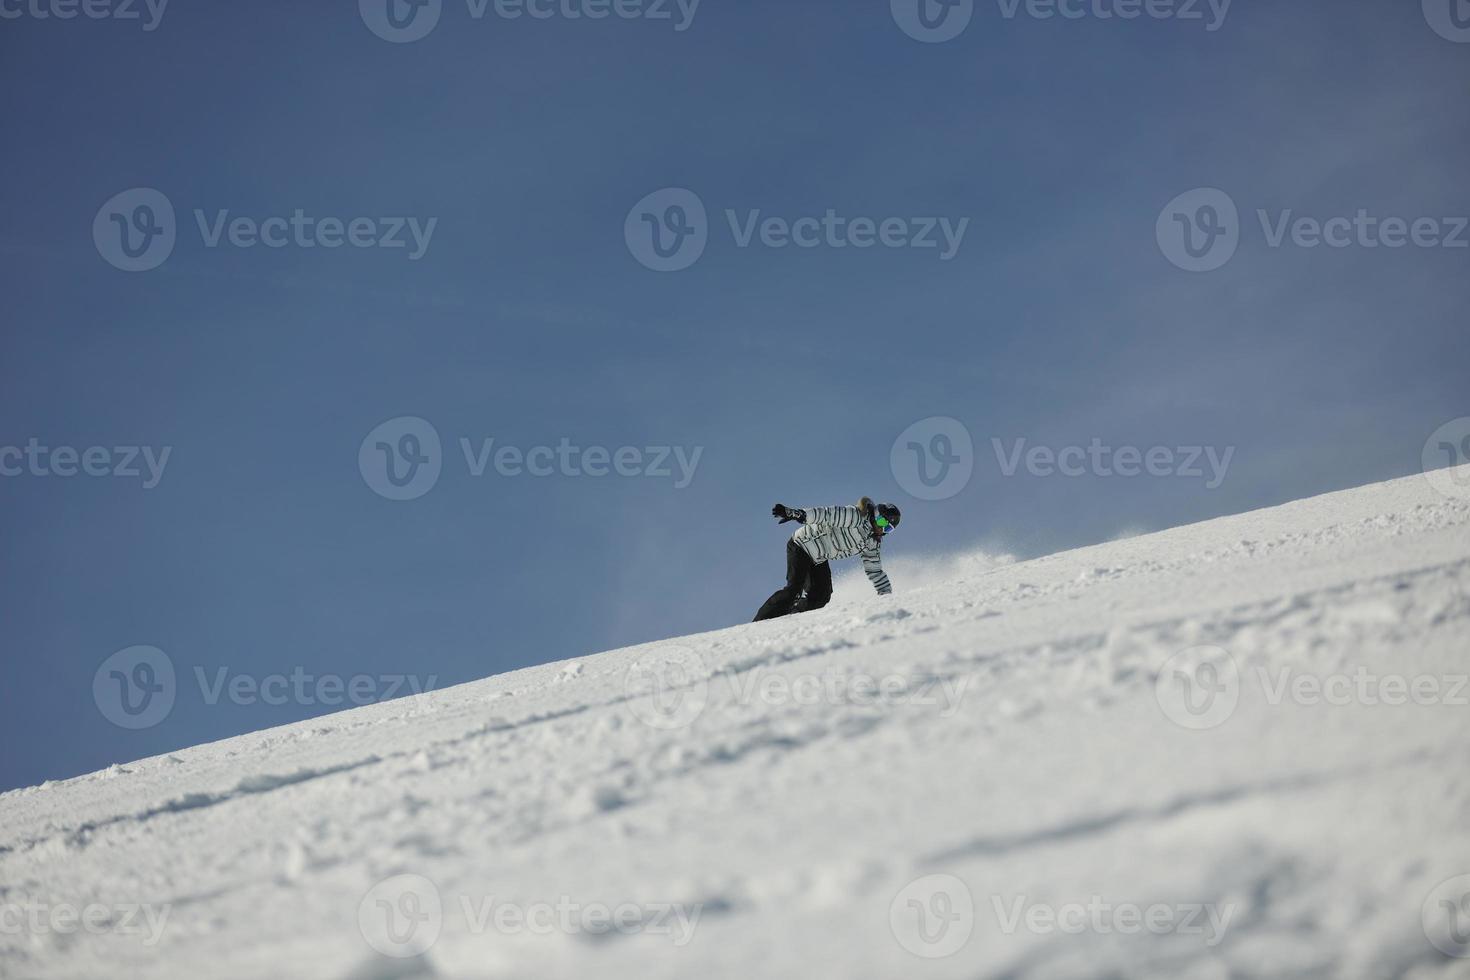 esquiadores na montanha foto